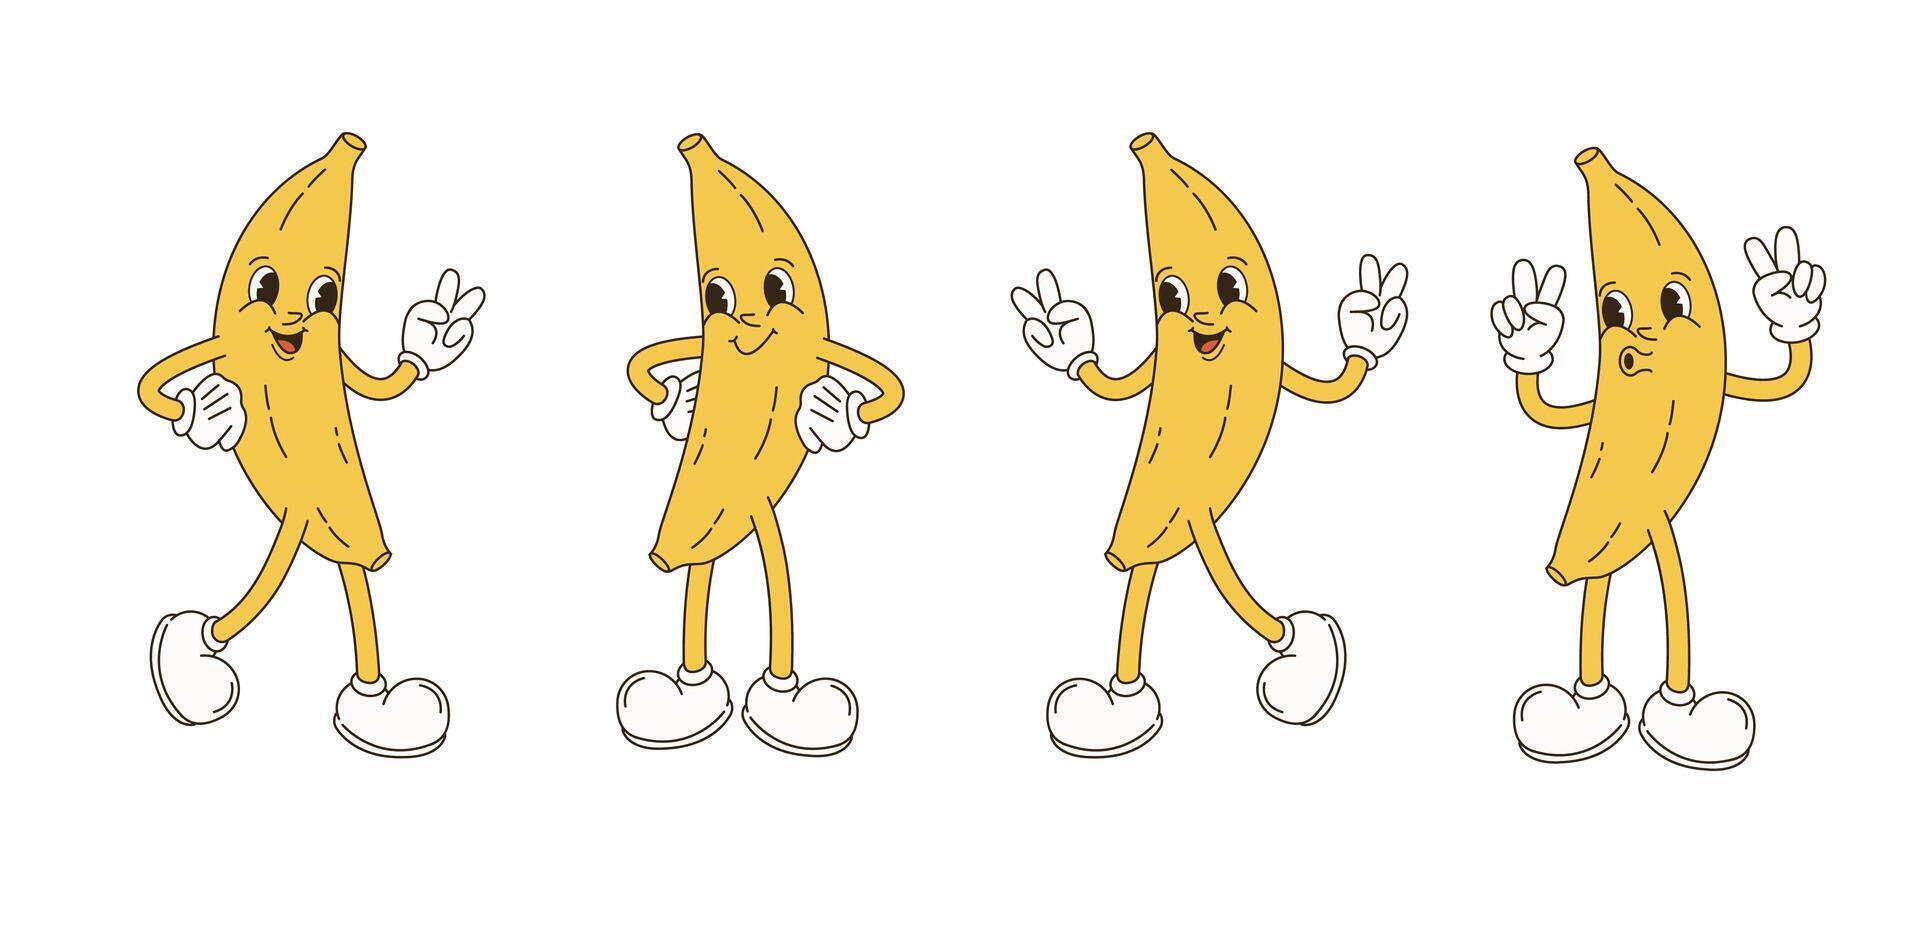 retro tecknad serie karaktär frukt uppsättning. vektor rolig illustration med banan, körsbär, citron, jordgubbe, vattenmelon